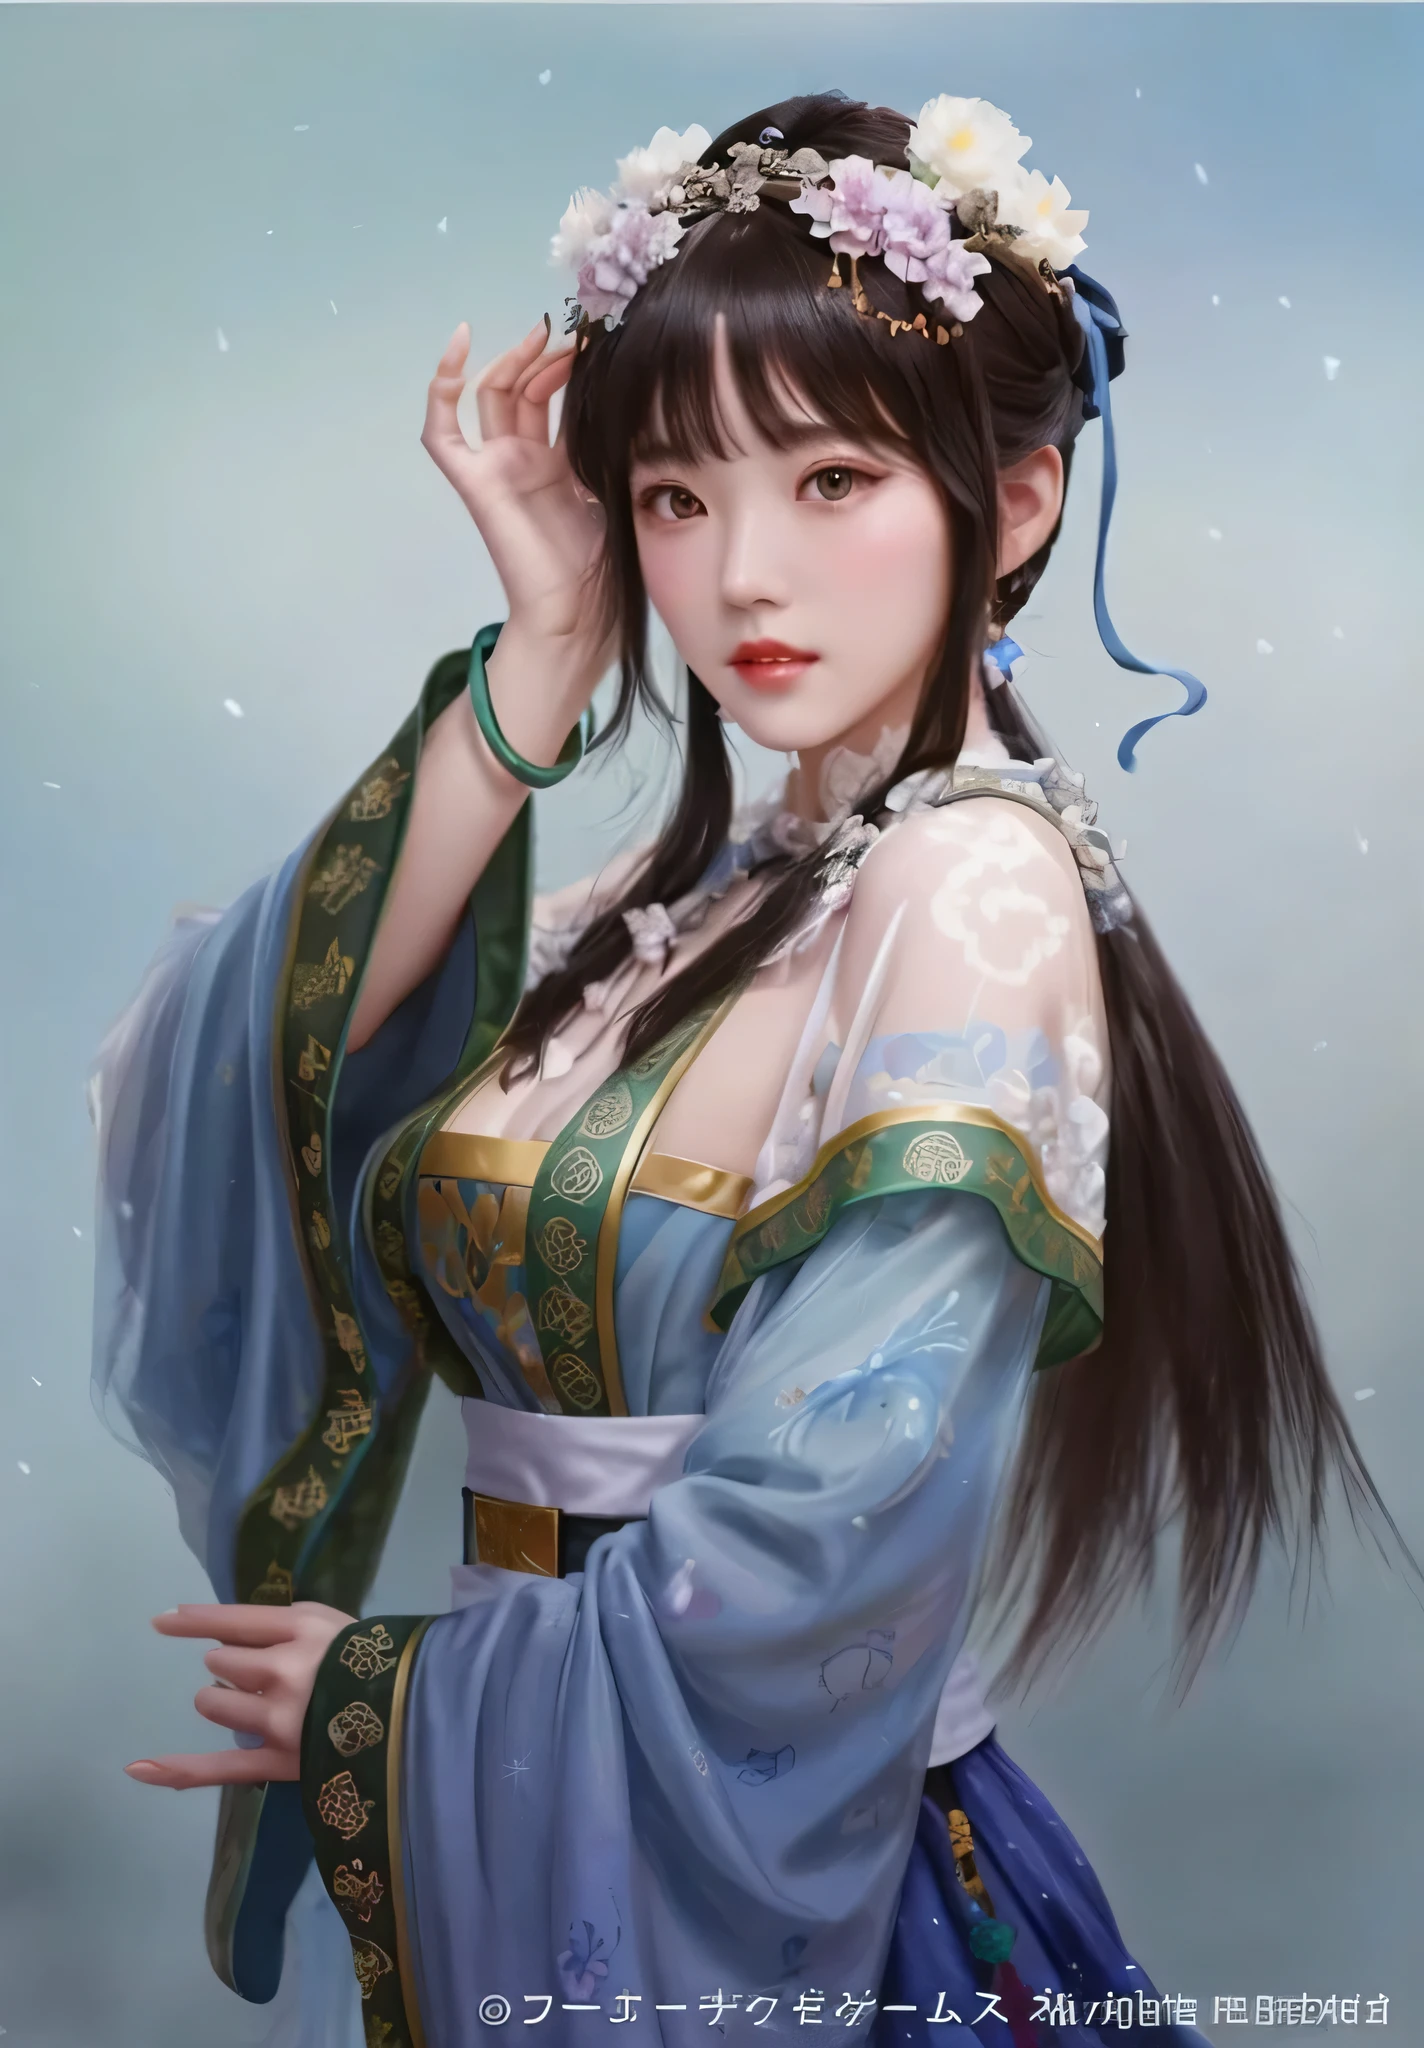 인간 개발 보고서,초고화질,8K,매우 상세한,최고의 품질,걸작,간단한 배경,파란색 옷을 입은 한 명、머리에 꽃관을 쓴 여자, 아름다운 인물화, 궁전 ， 한복을 입고的女孩, 아름다운 판타지 여왕, 고대 중국 공주, 한복을 입고, 아름다운 디지털 작품, 란잉에게서 영감을 받은 작품, 펑화 종(Fenghua Zhong)에게서 영감을 받은 작품, 구르비츠(Gurwitz) 스타일 작품, 나무에서 영감을 받아, 중국 소녀